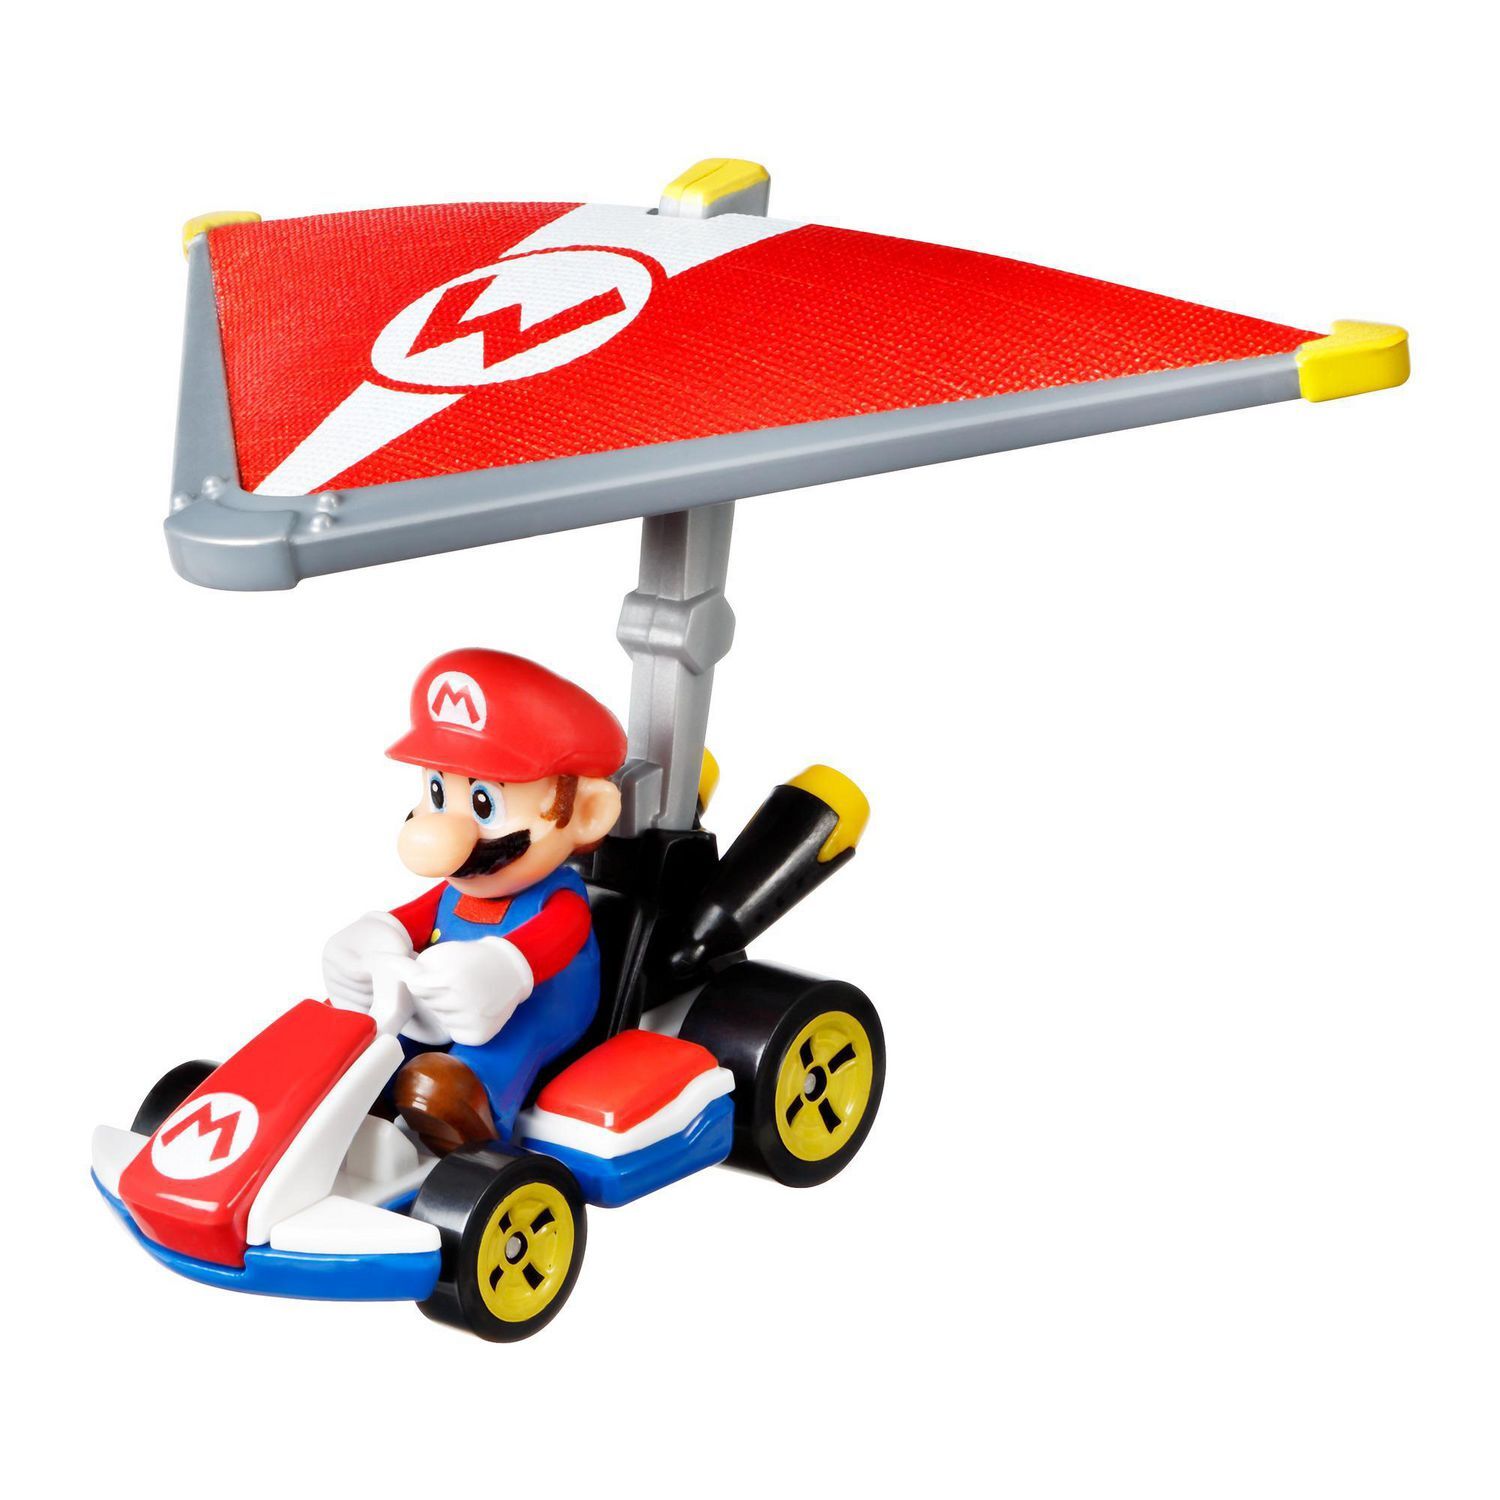 Hot Wheels Mario Kart Mario Standard Kart + Super Glider